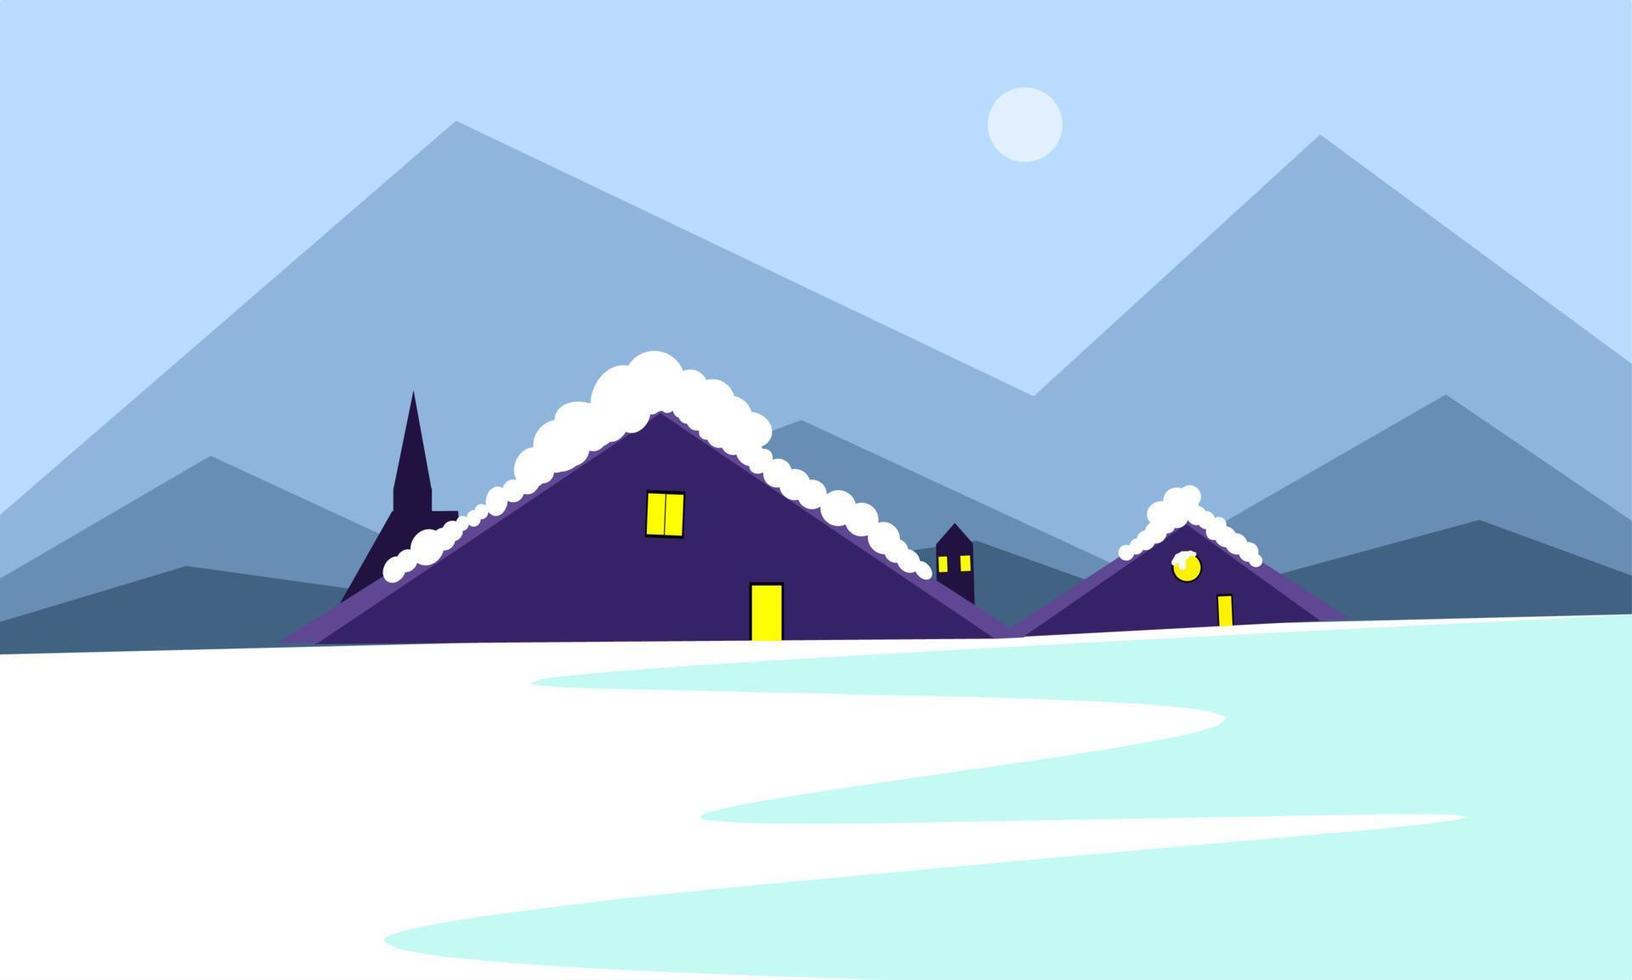 diseño de ilustración de invierno, vista de la casa en invierno, ilustración de paisaje de invierno vector